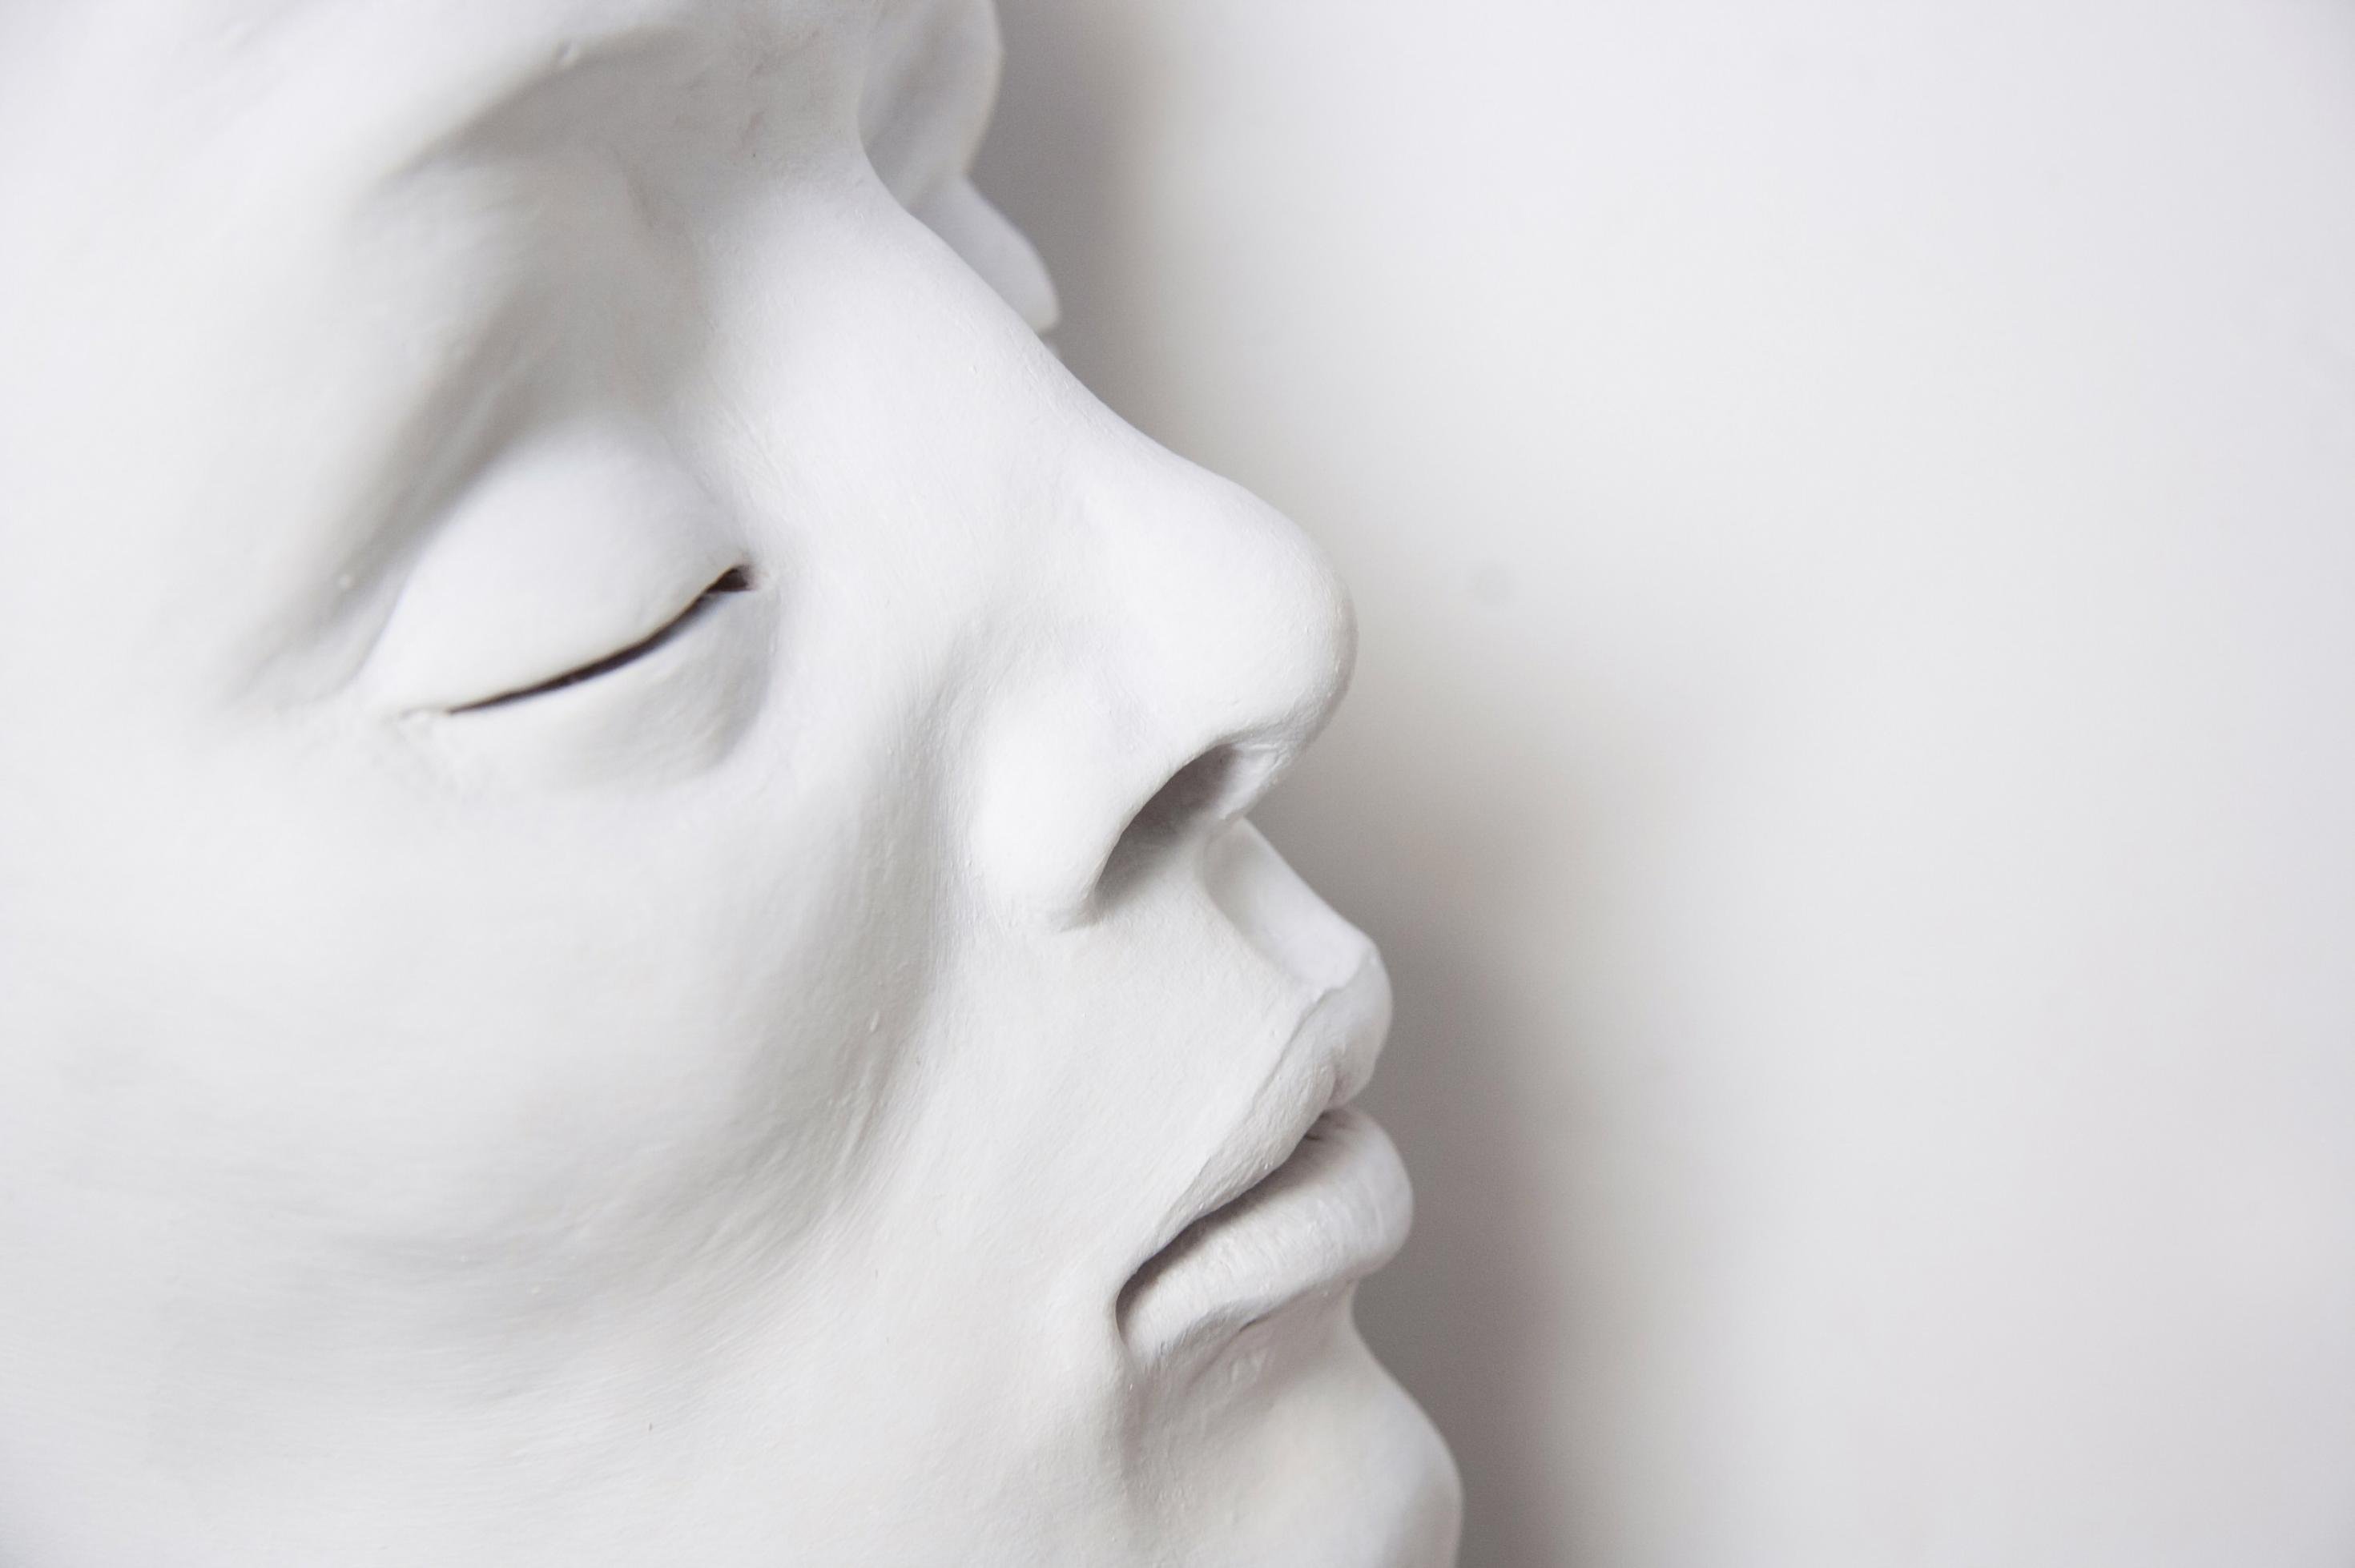 Komplett weiß geschminktes Gesicht einer schlafenden Frau mit geschlossenen Augenlidern